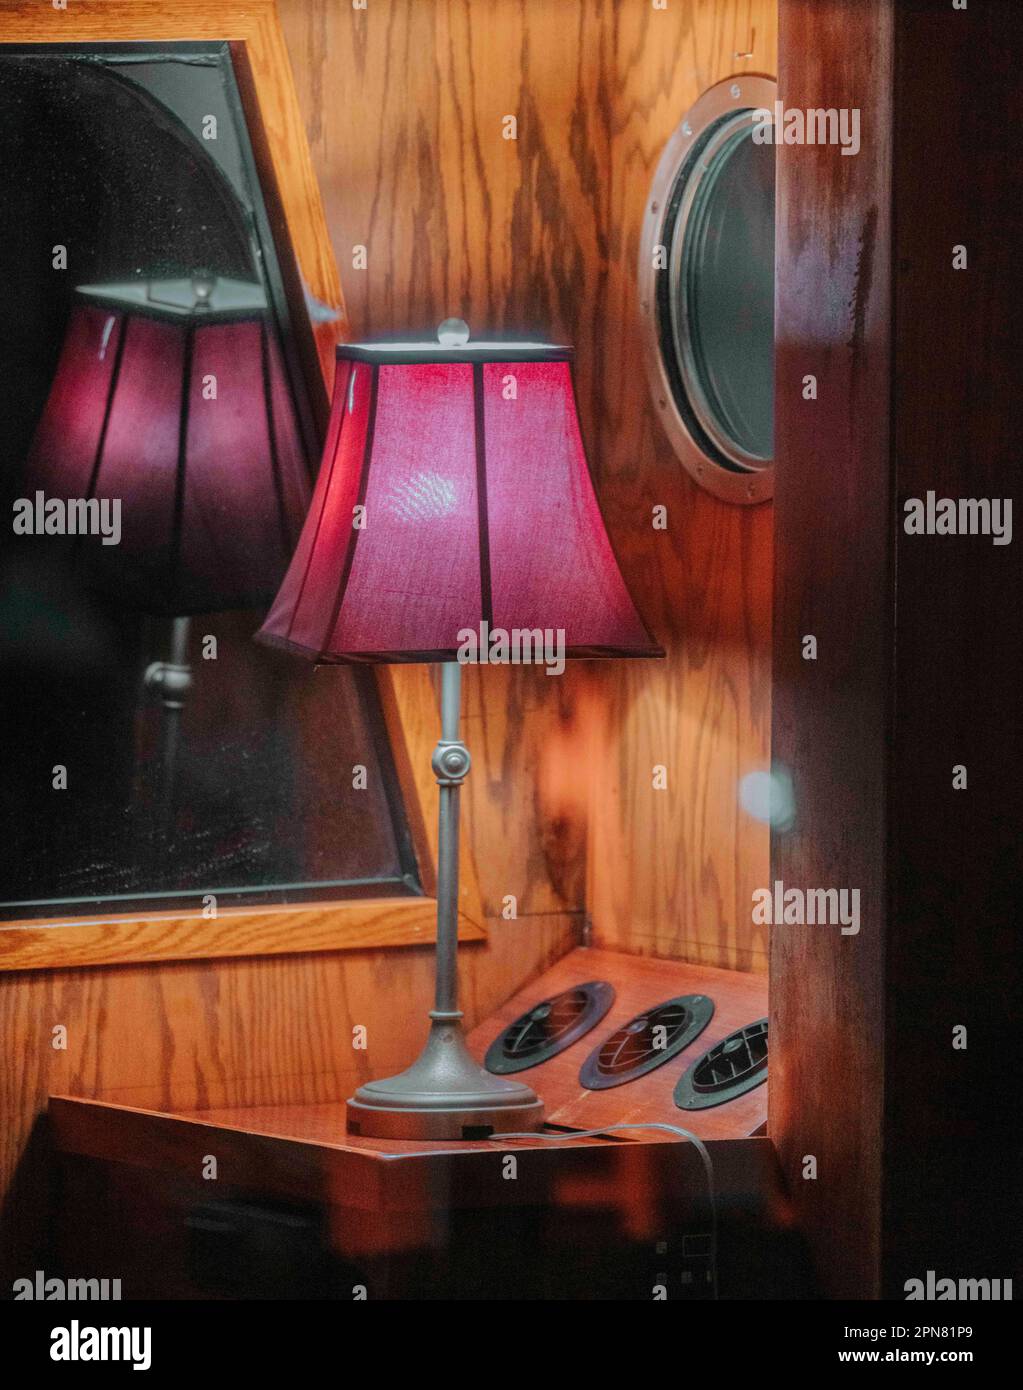 Una lampada dall'aspetto rustico con una lampadina a vista si trova in cima a un tavolo di legno sotto un grande specchio Foto Stock